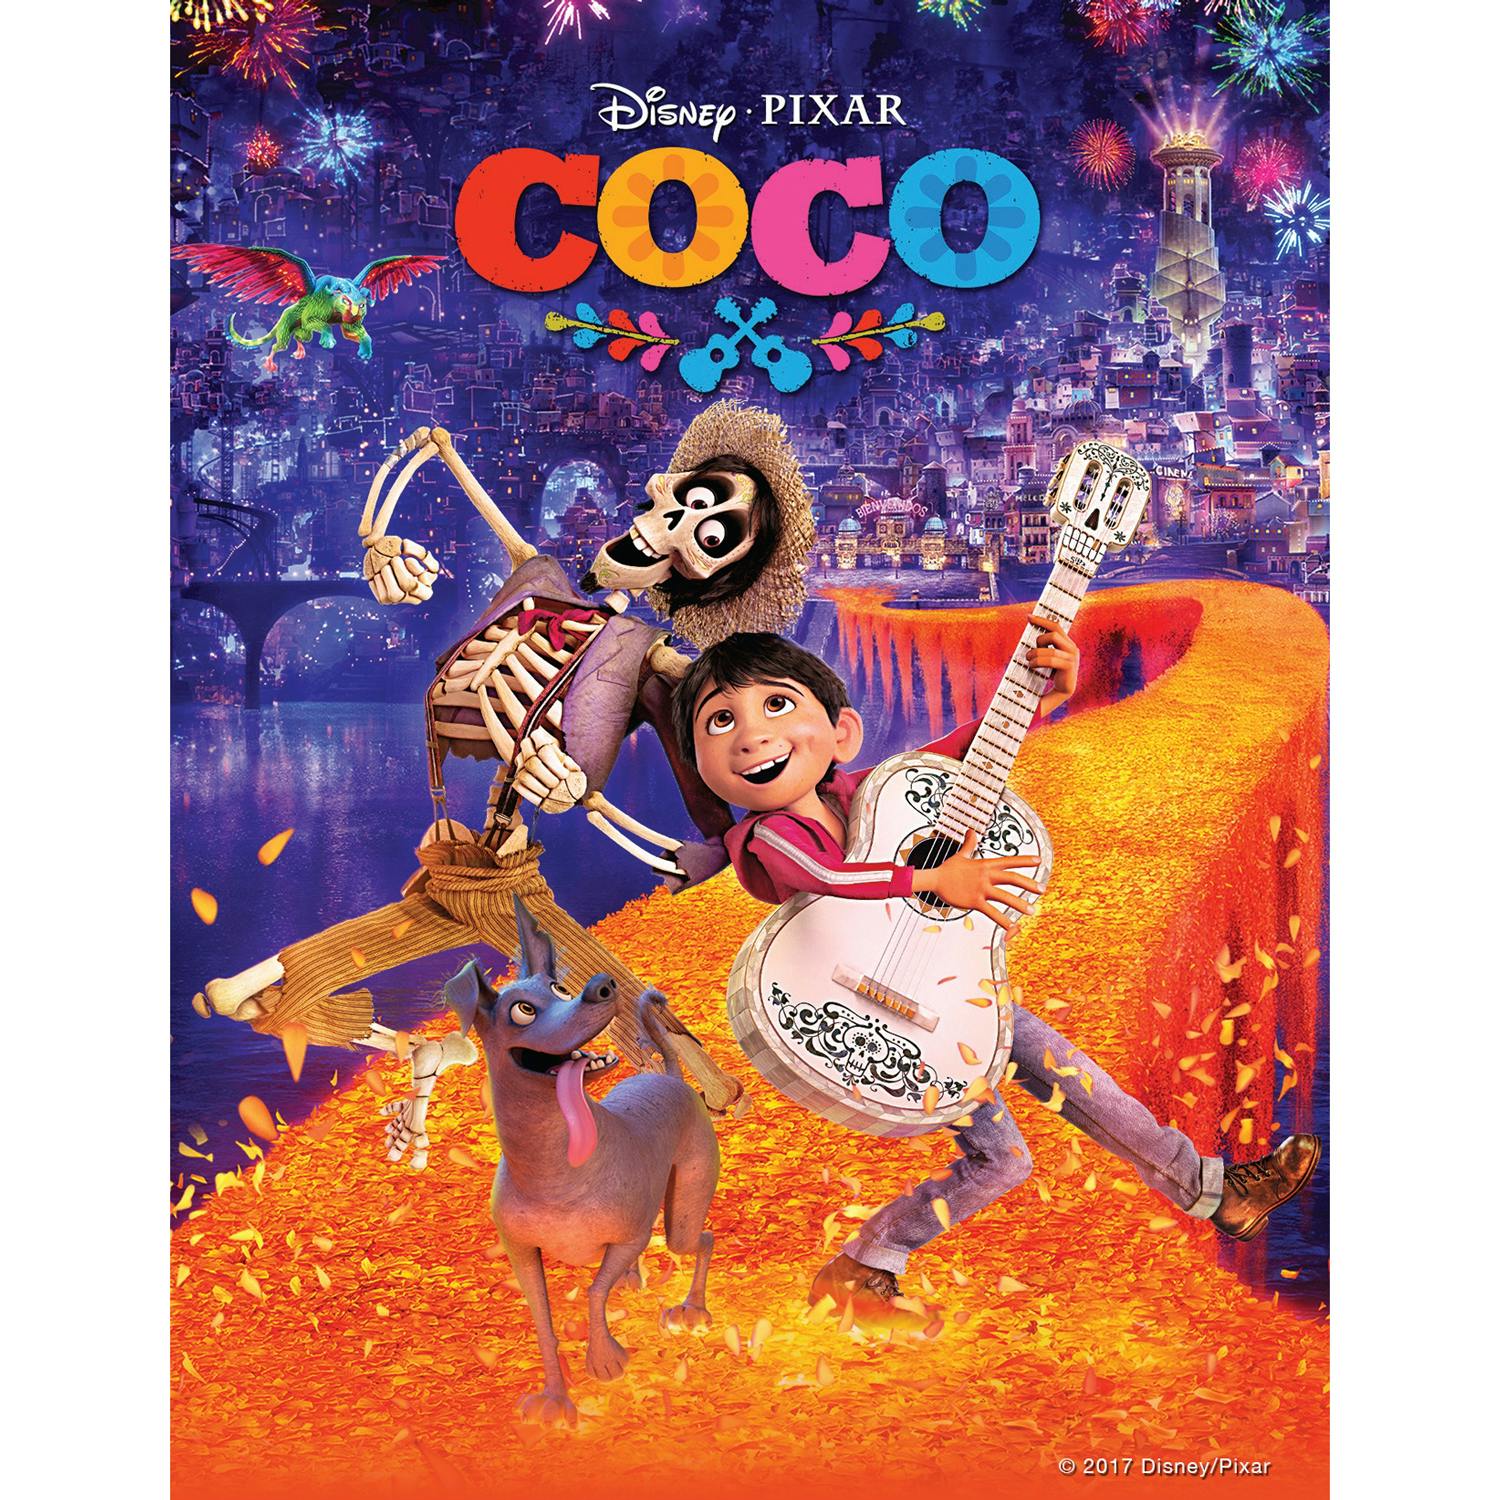 Disney Original Movie Coco DVD